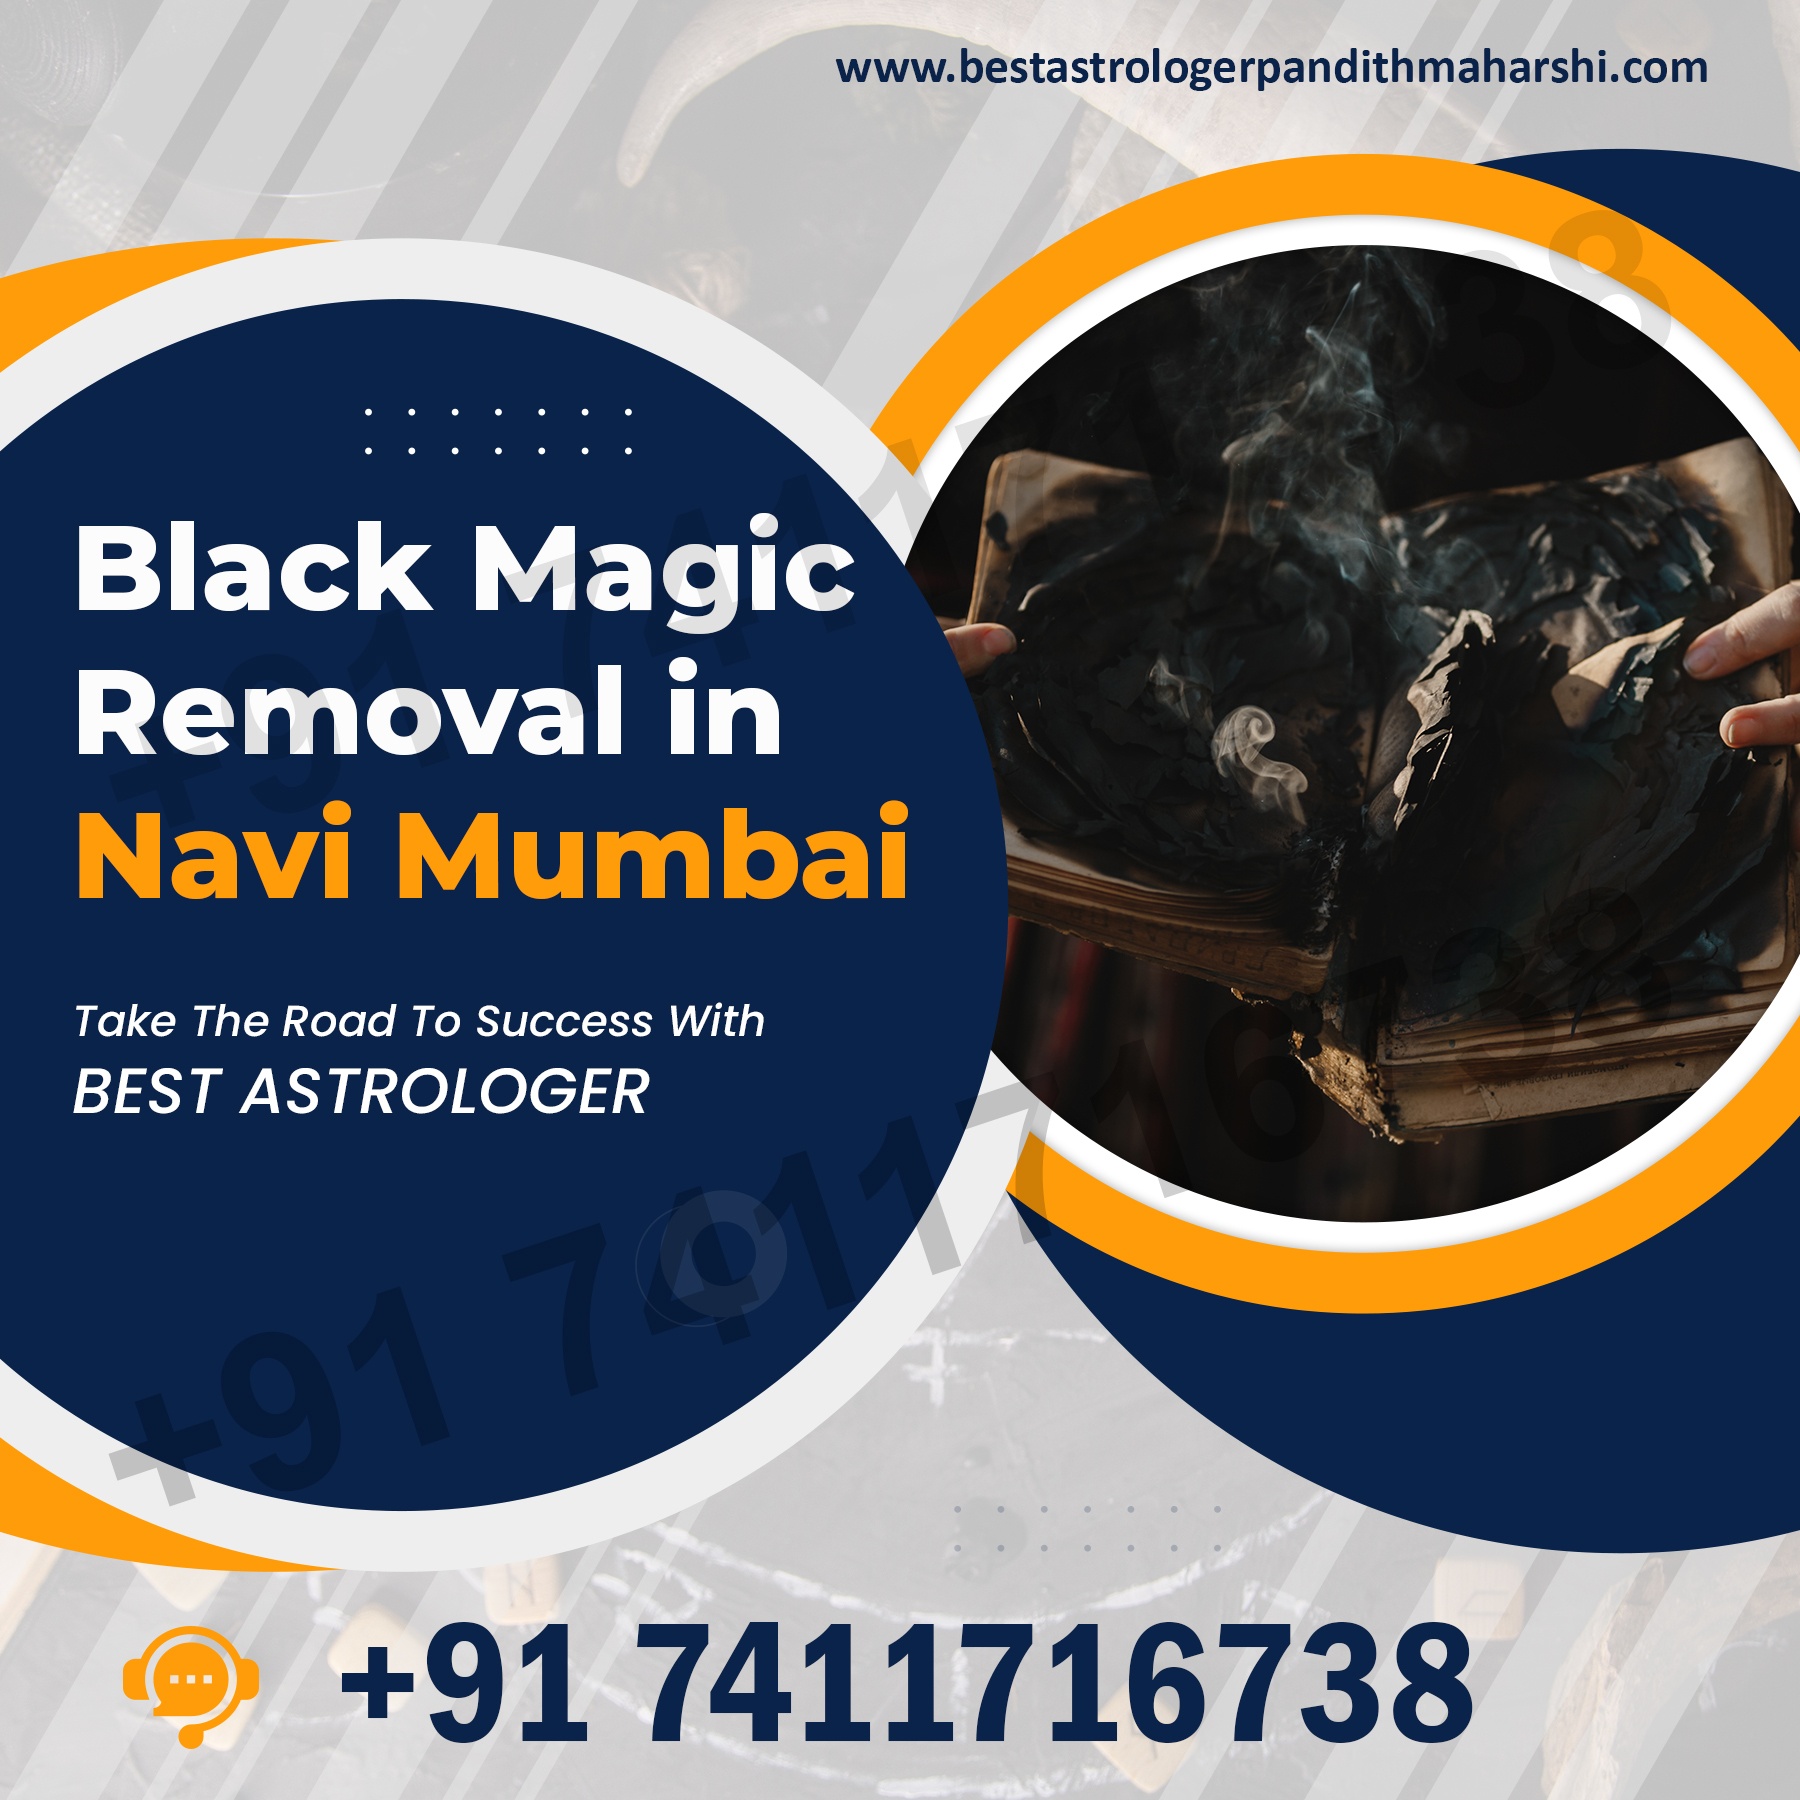 Famous Astrologer in Navi Mumbai